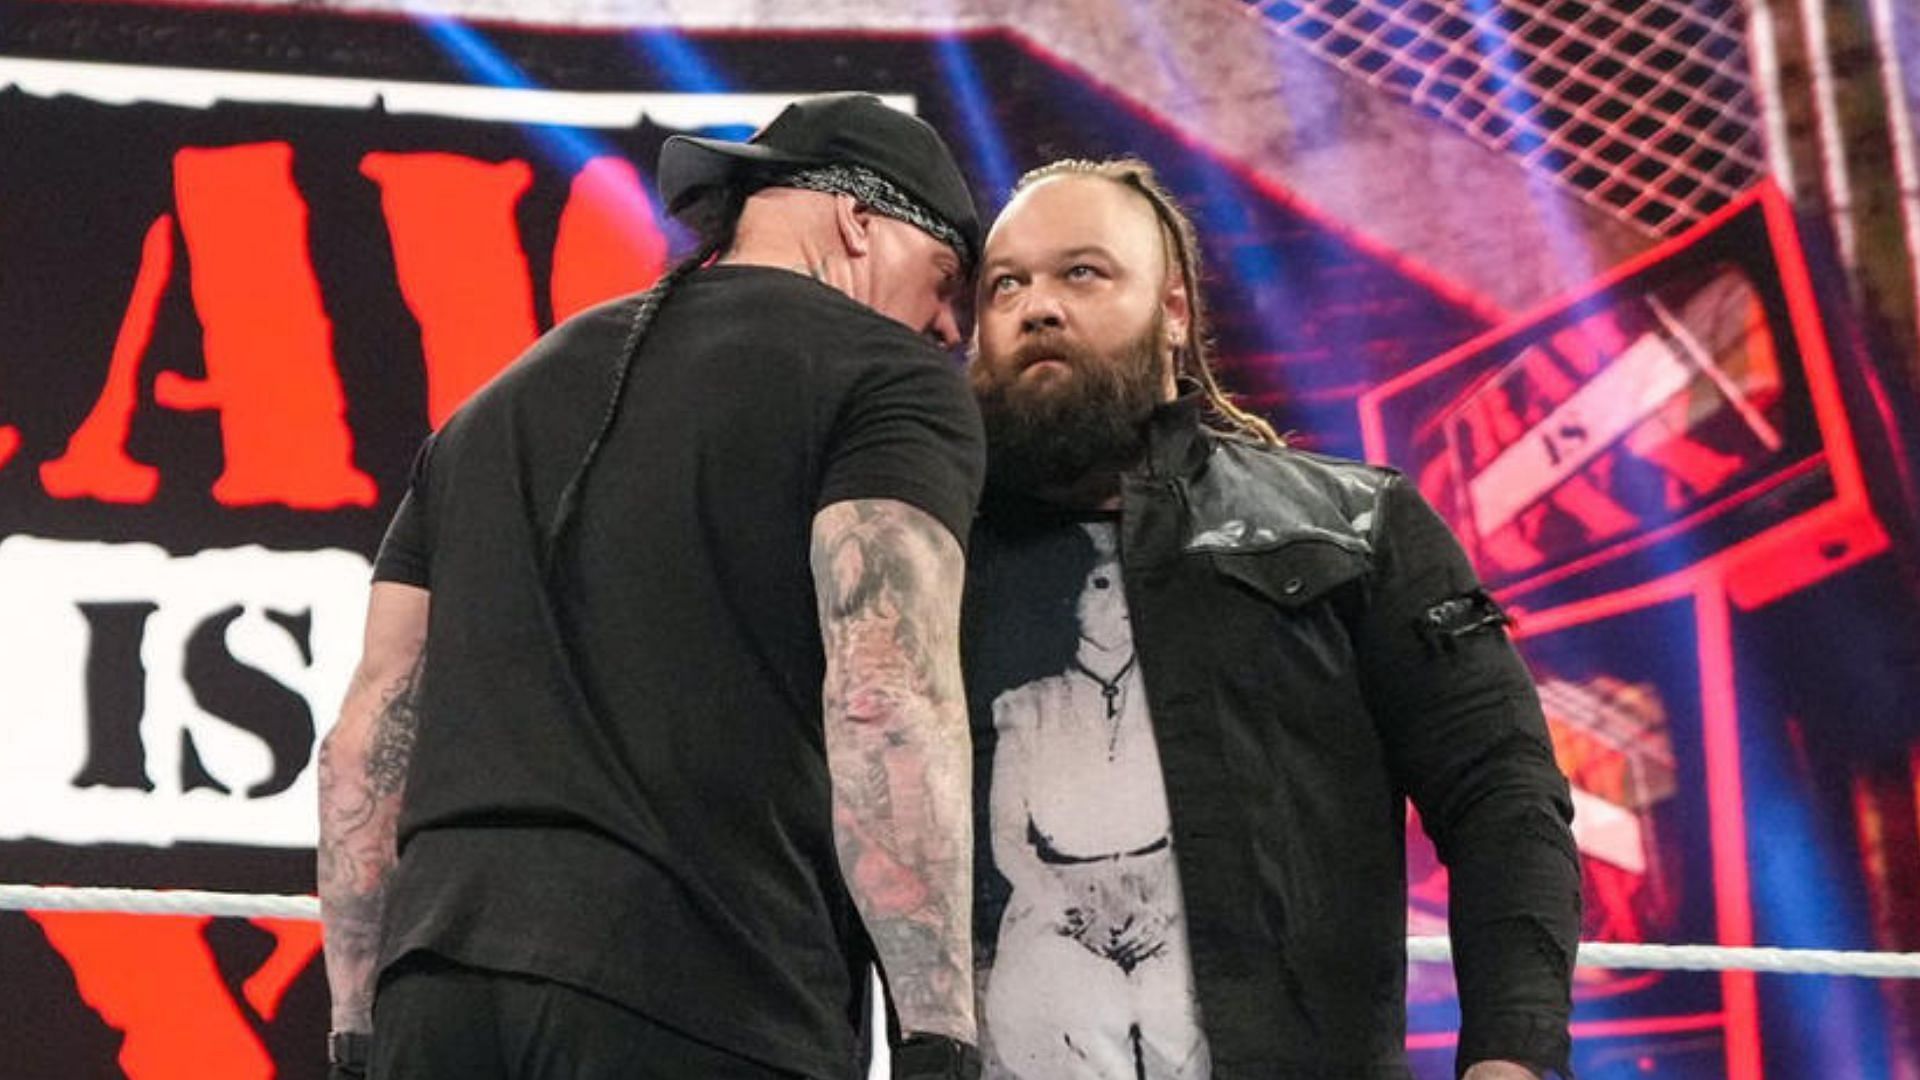 Bray Wyatt met The Undertaker on WWE RAW XXX!